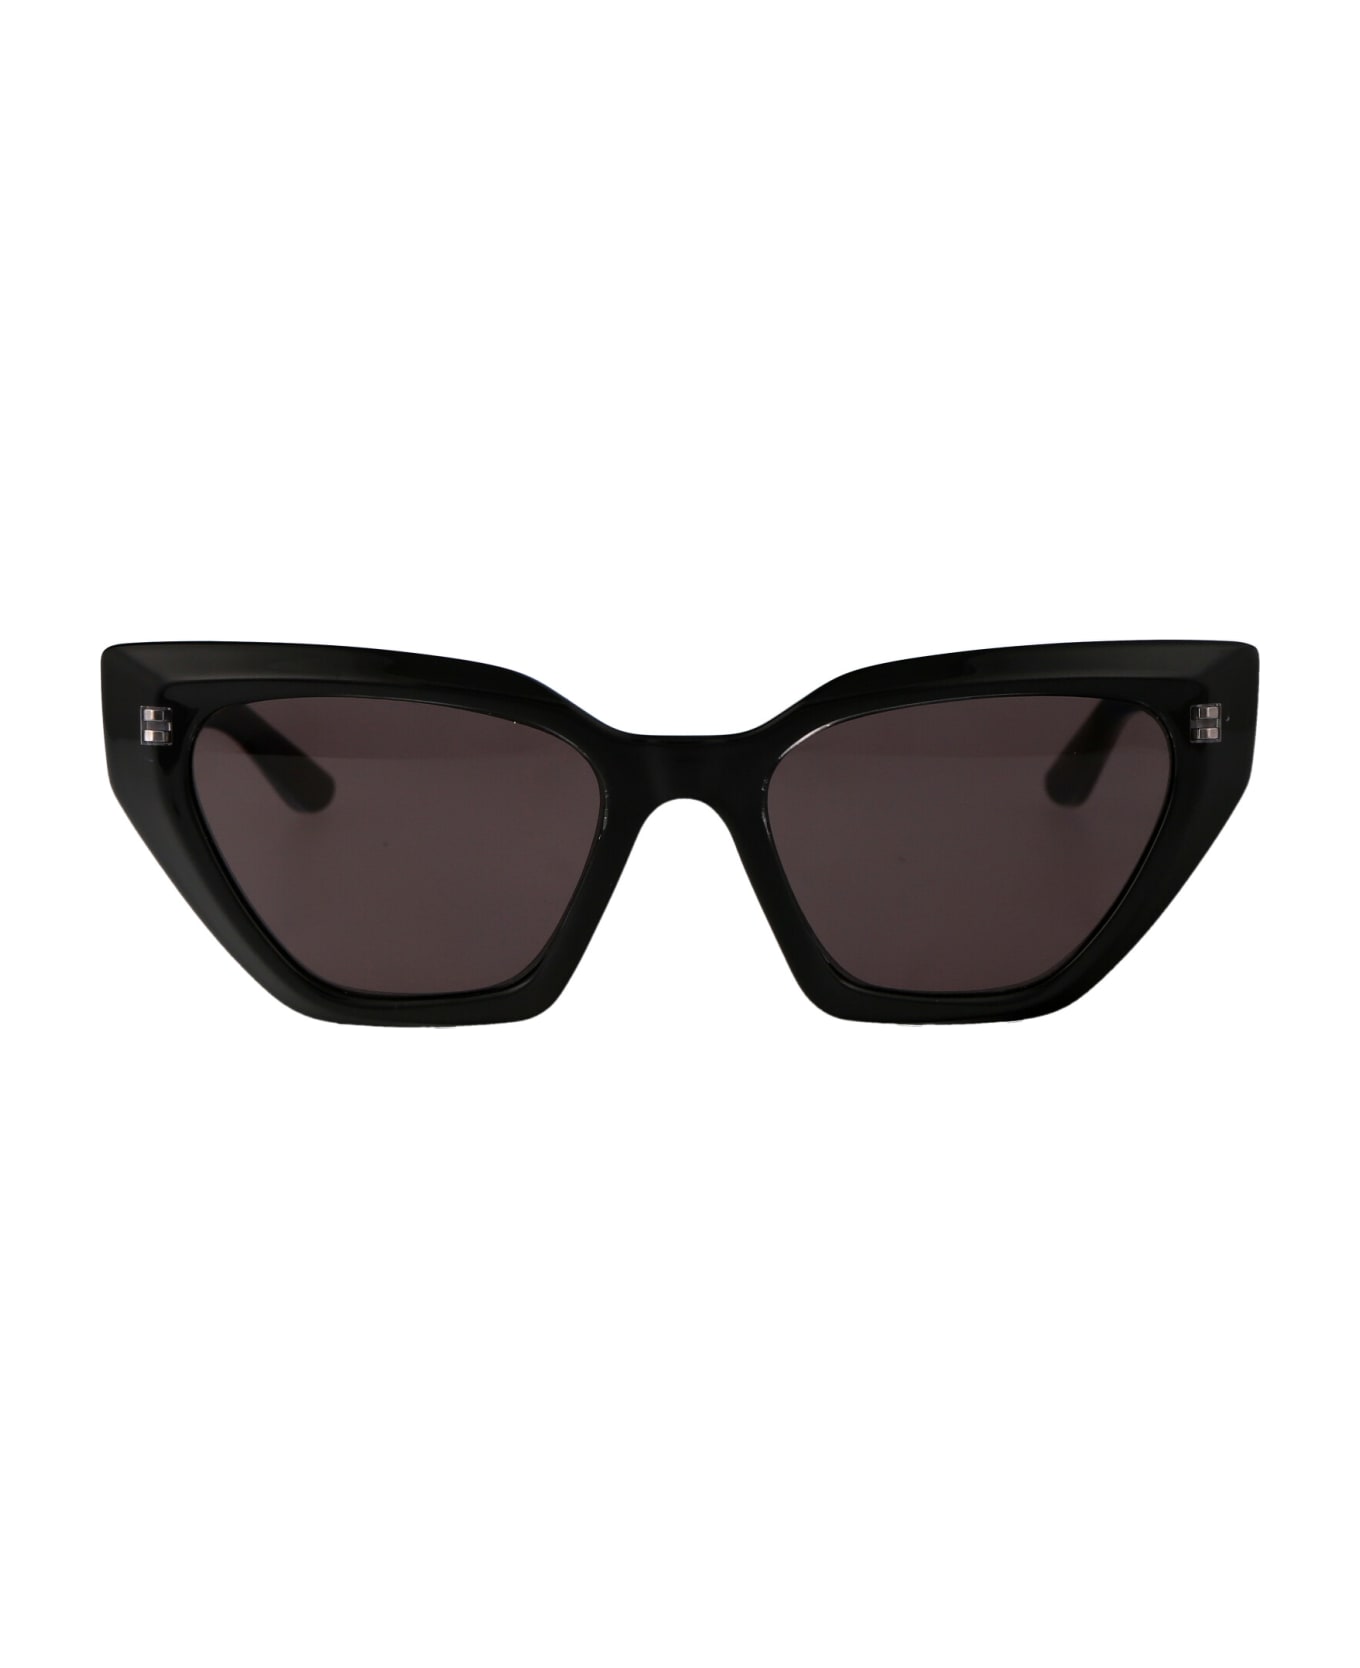 Karl Lagerfeld Kl6145s Sunglasses - 001 BLACK